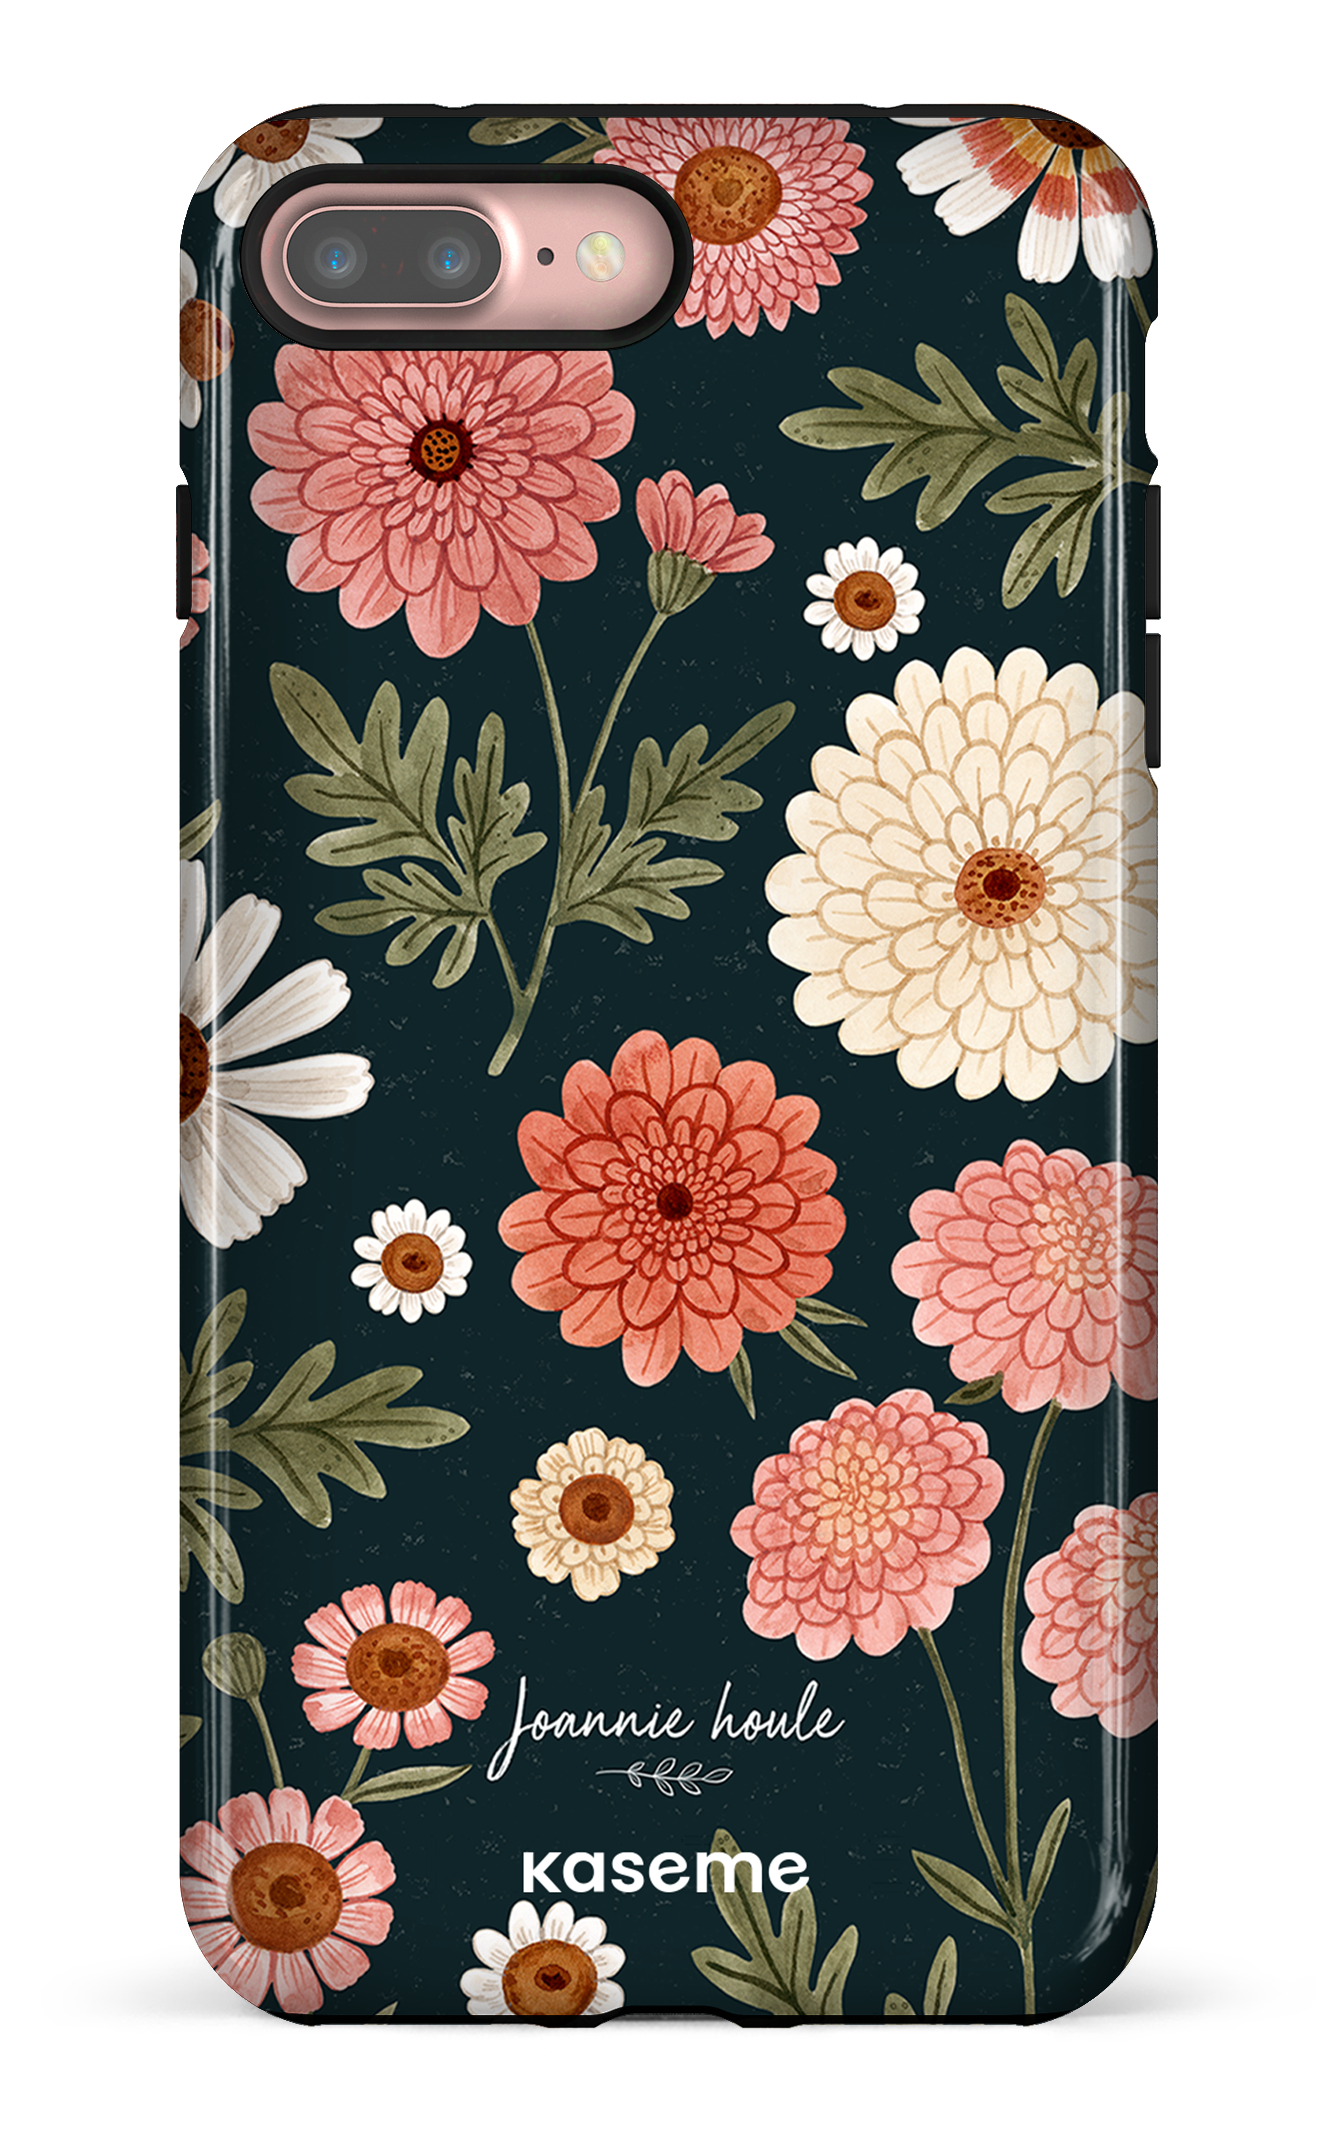 Chrysanthemums by Joannie Houle - iPhone 7 Plus